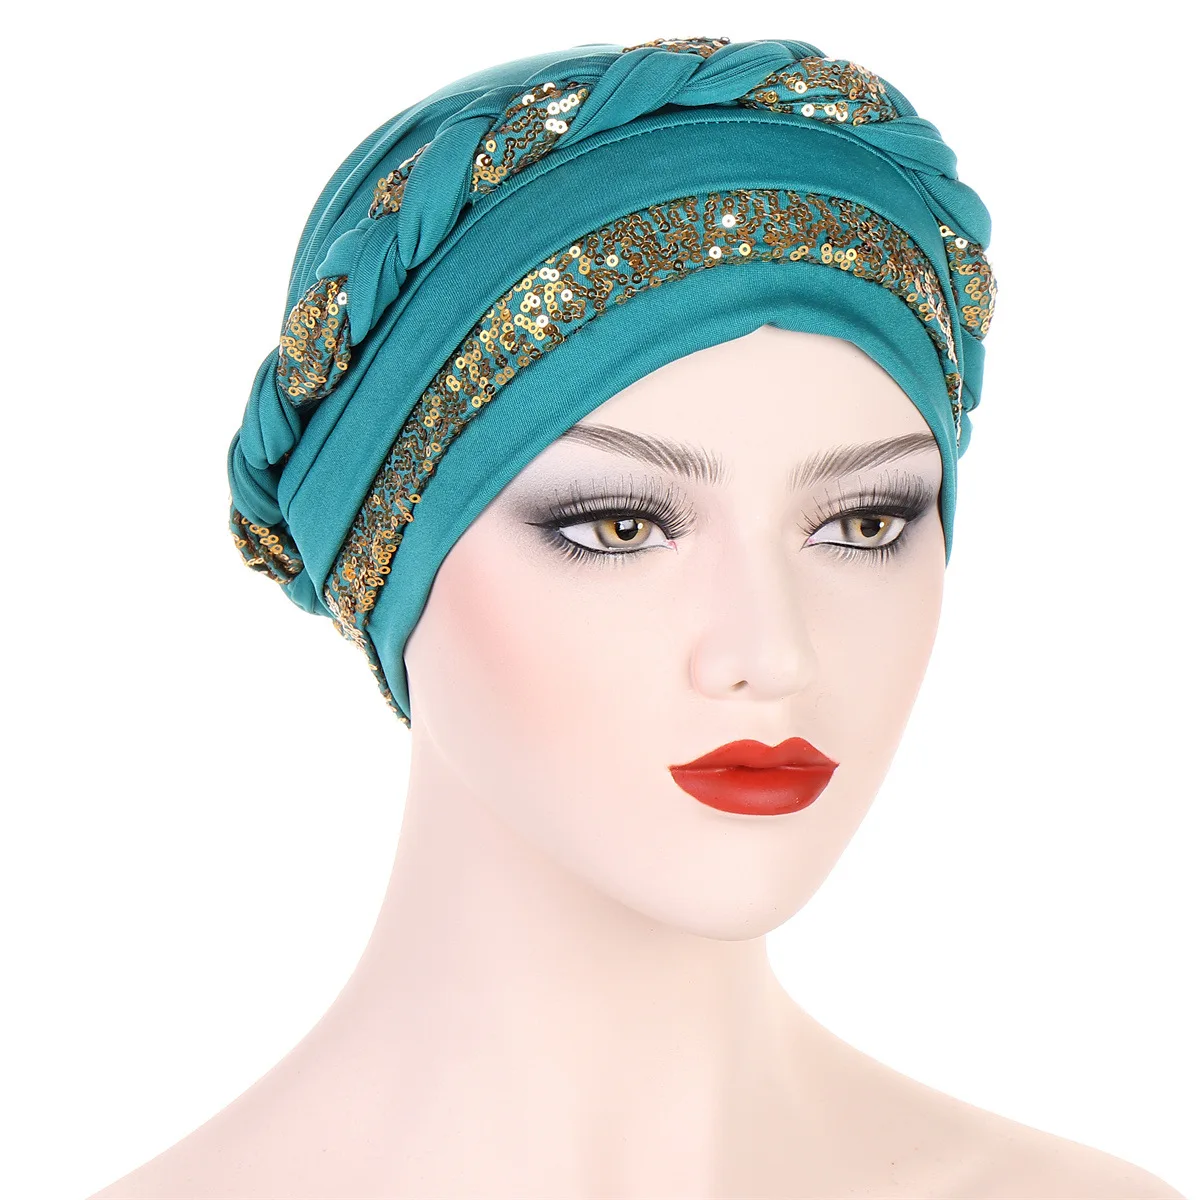 

India Muslim Women Hijab Hat Cancer Chemo Cap Braid Sequin Turban Islamic Head Wrap Lady Beanie Bonnet Hair Loss Cover